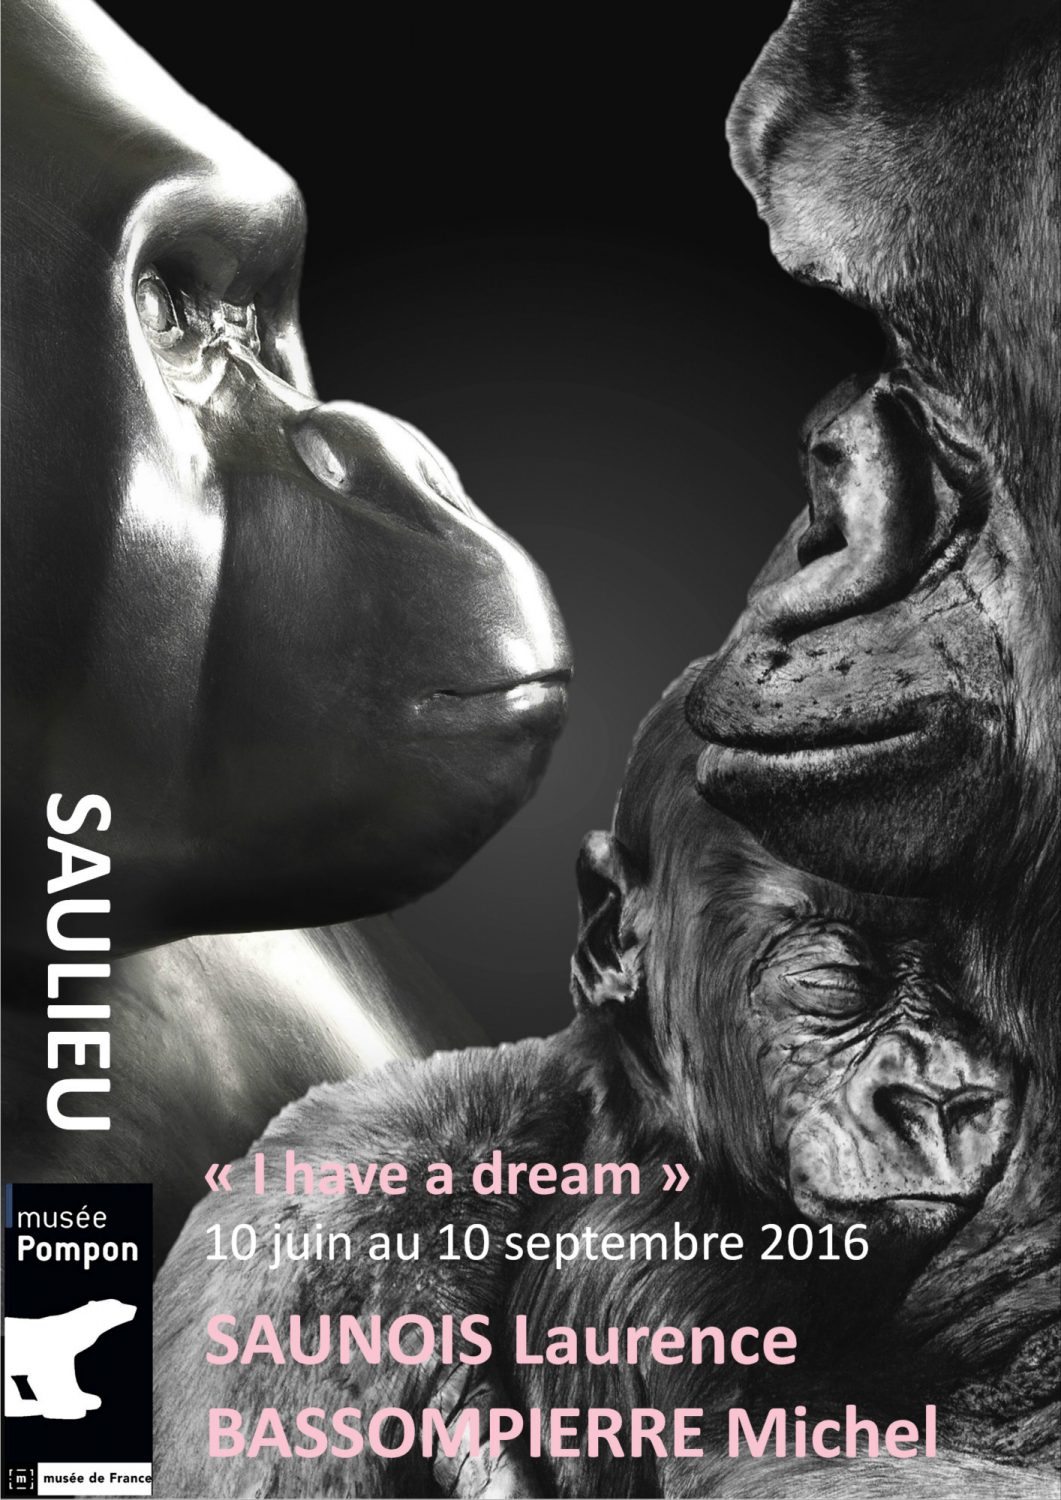 "I have a dream", les grands singes de Michel BASSOMPIERRE et Laurence SAUNOIS